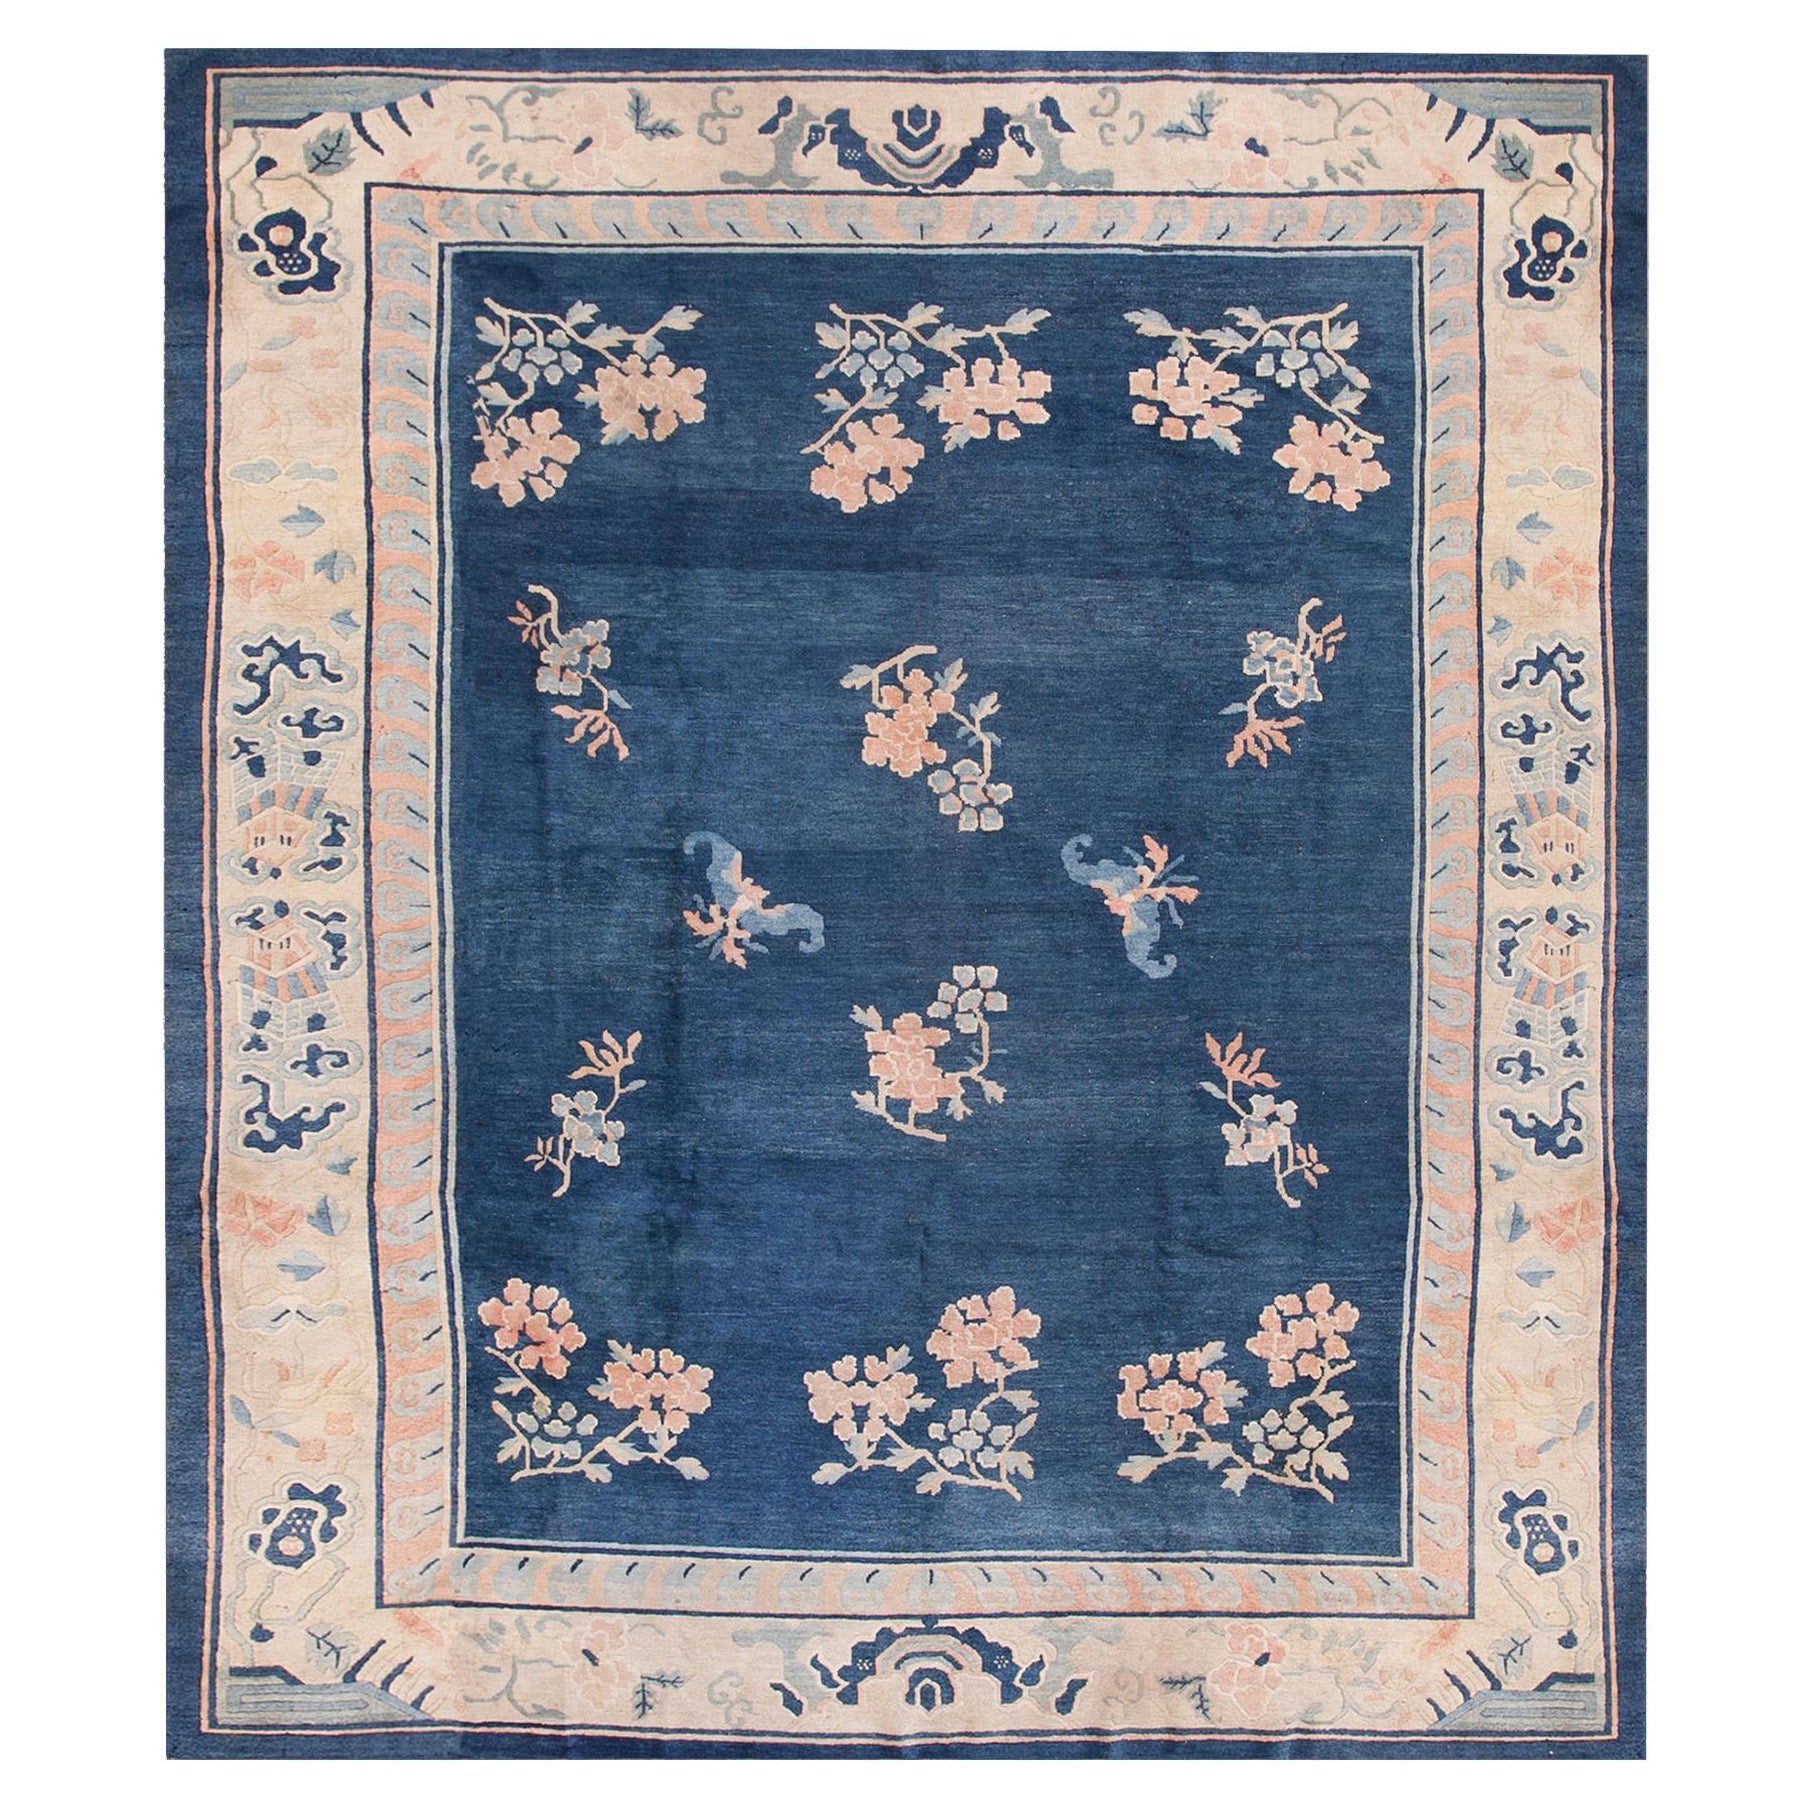 Chinesischer Pekinger Teppich des 19. Jahrhunderts ( 8' X 9'6" - 245 X 290)